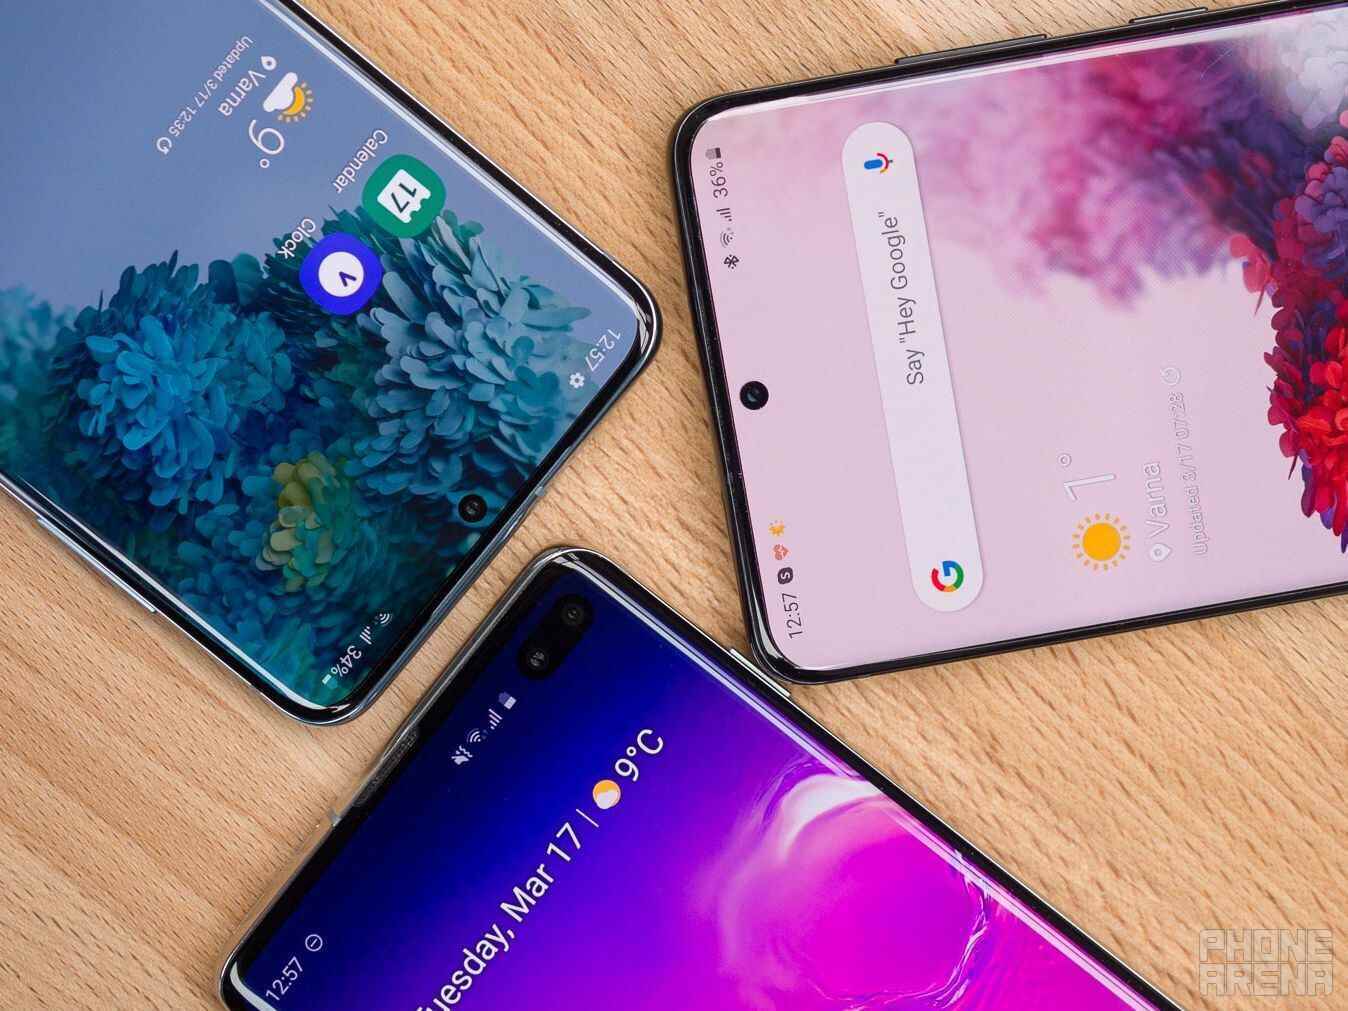 S20 telefonların iki yıl daha desteği var, bu da onları şimdi bile mükemmel bir seçim haline getiriyor.  - Samsung sözünü yerine getiriyor ve Galaxy S20 için yeni bir güvenlik güncellemesi yayınladı.